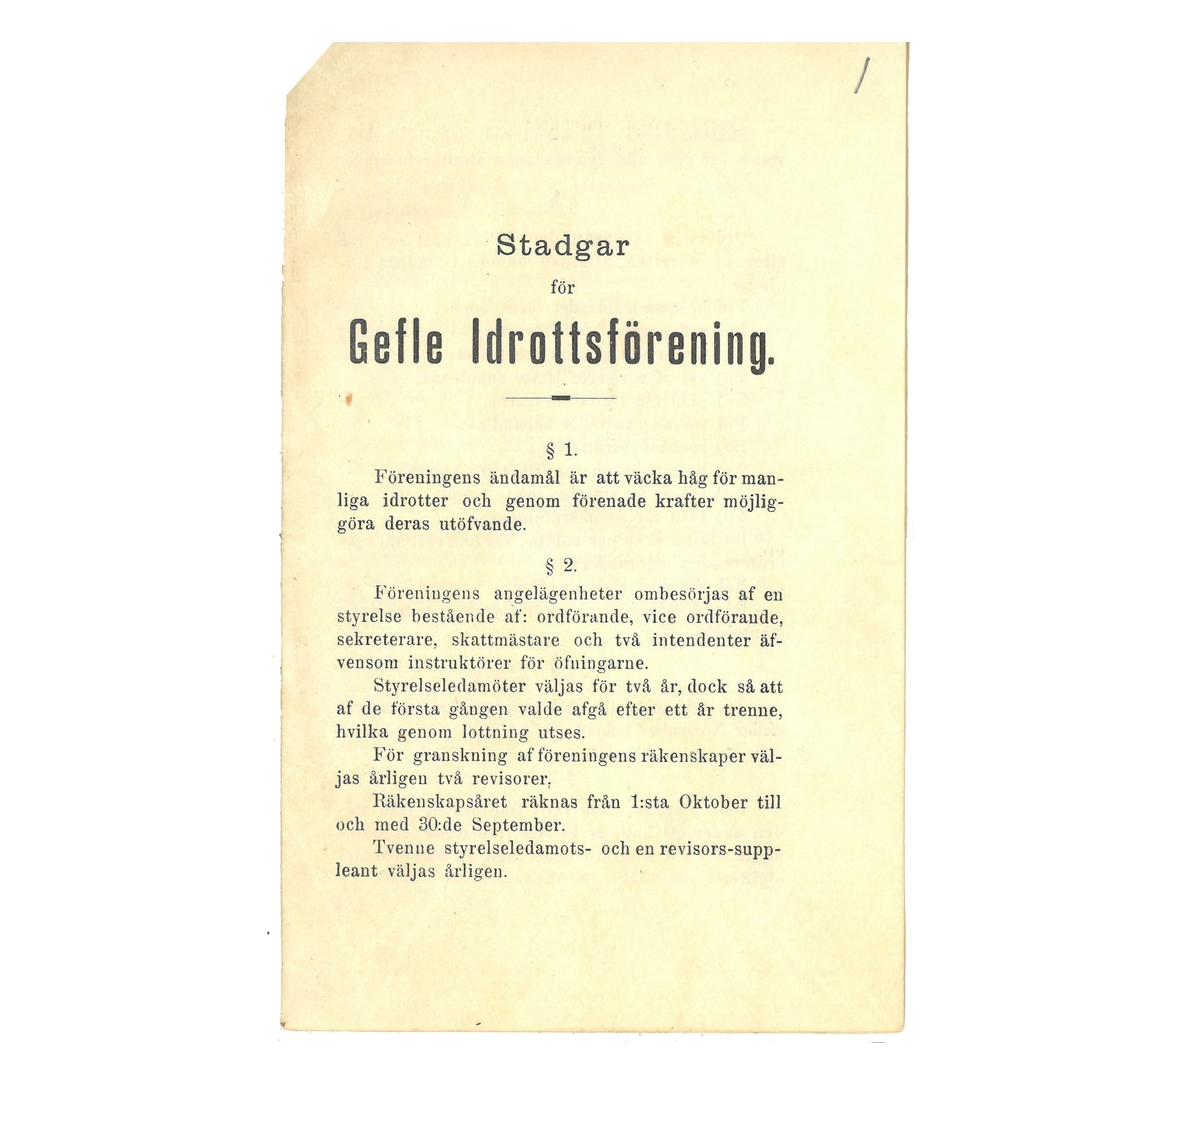 Gefle idrottsförening, Stadgar 1888. Se nedan för nedladdningsbar PDF.